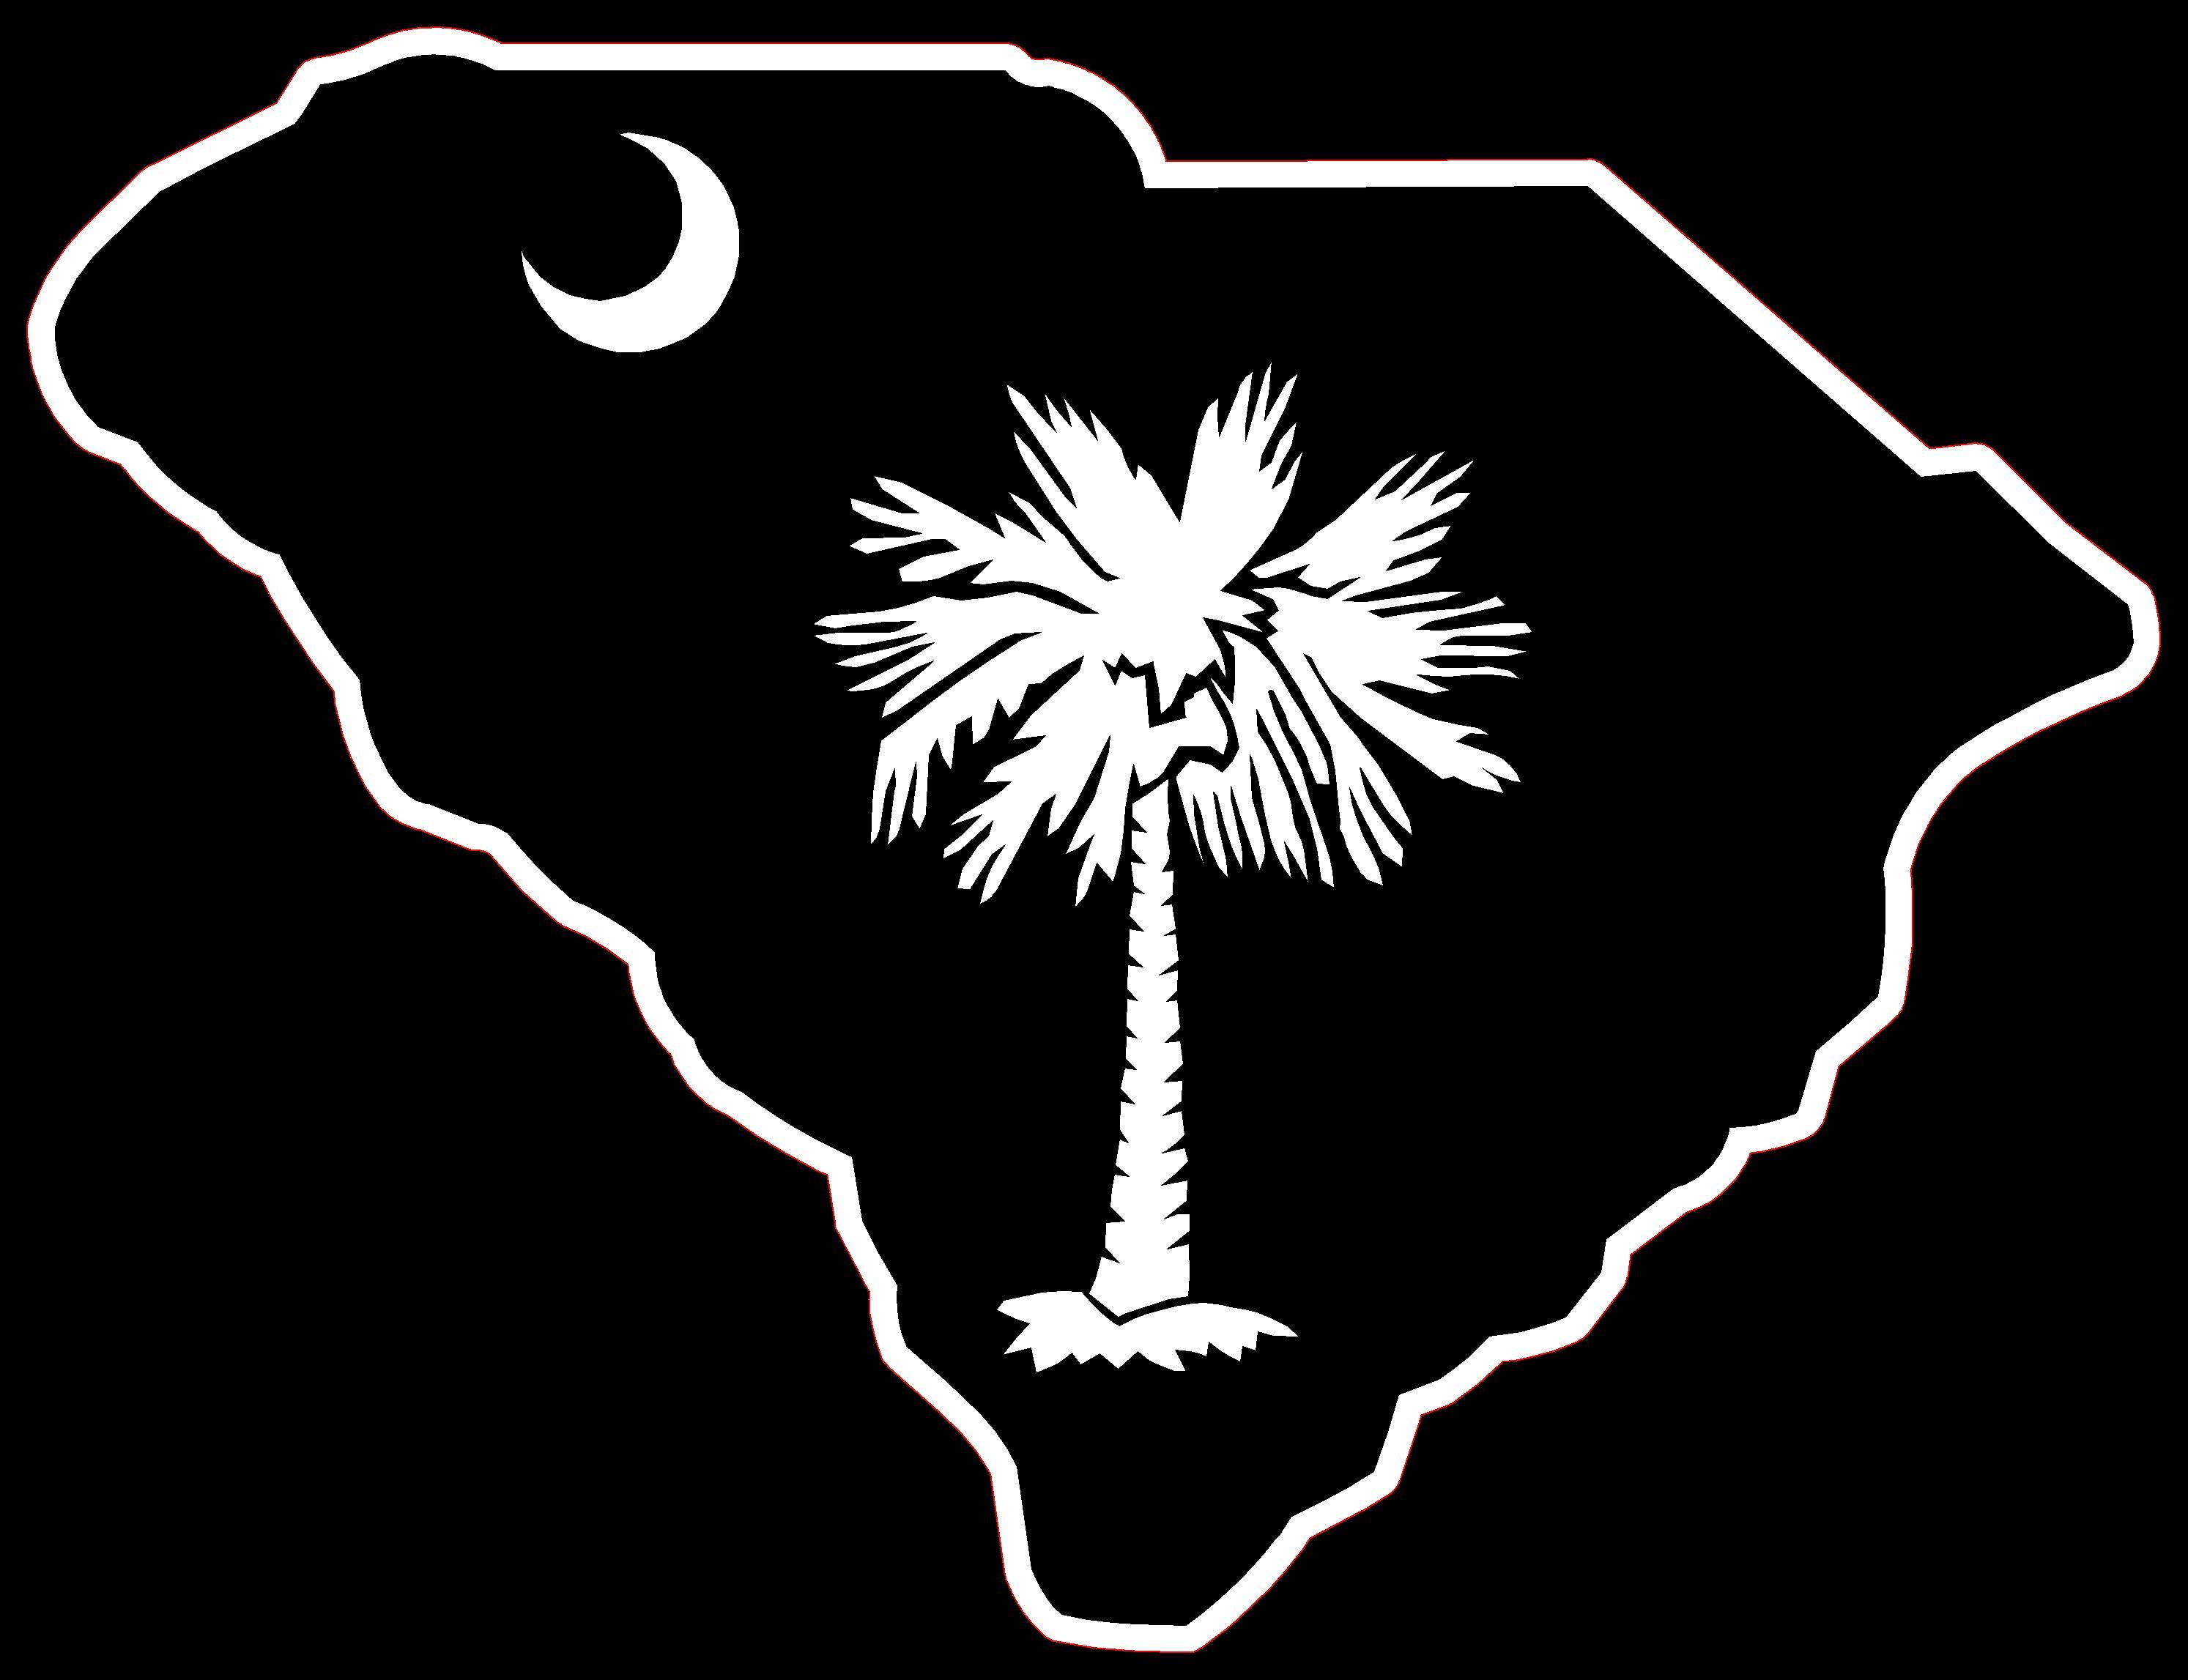 Palmetto Logo - South Carolina Palmetto | Free Images at Clker.com - vector clip art ...